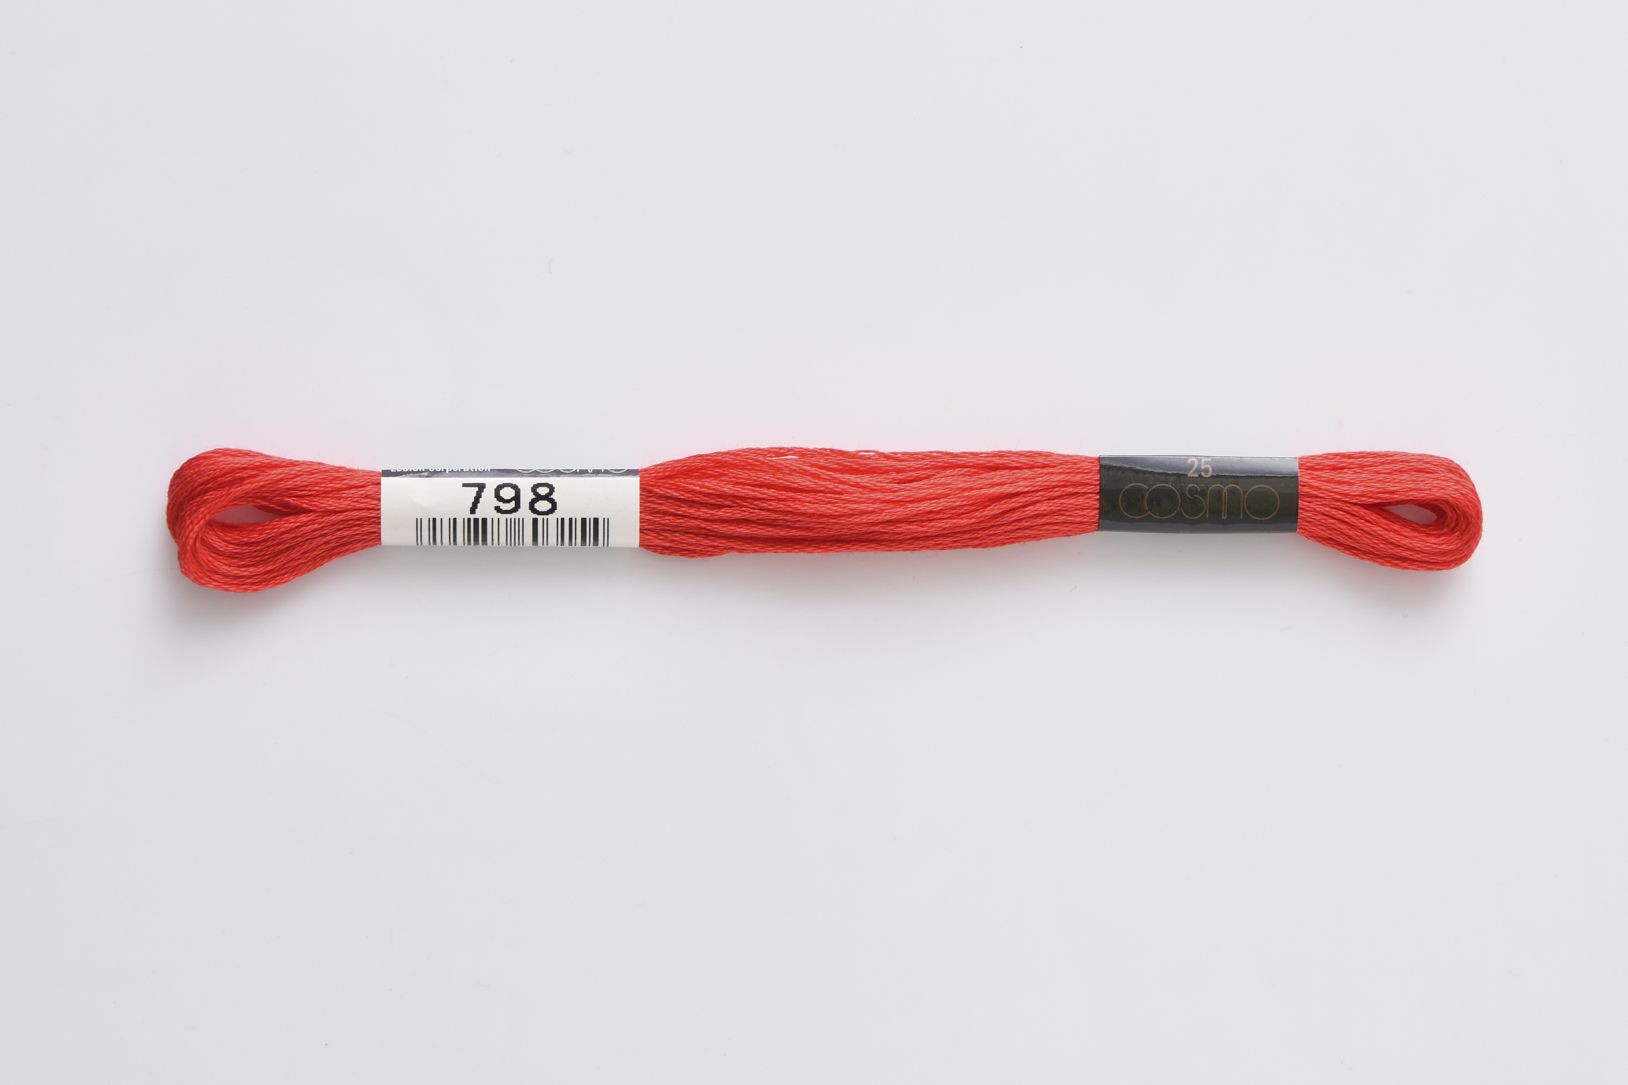 ■ COSMO #25 刺しゅう糸 ■ ◆25番刺しゅう糸　798番◆　 LECIEN がコスモ刺しゅう糸の取り扱いを始めたのは1950年。 当初は195色展開でしたが、より多くの人を魅了する配色を求め、現在では500色の色数を手掛けるようになりました。原料・製法・品質にこだわり、シルクのように輝く光沢に、ソフトな風合い、そして美しい発色を持つコスモ刺しゅう糸は日本国内にとどまらず、欧米をはじめオーストラリア、台湾など世界中の方に愛され、使用されています。 色あせ色落ちしにくい上品な光沢、匠の技術による美しい発色、プロも愛用する繊細なカラーバリエーションが魅力の手刺しゅう用糸（6本あま撚り）。 高級超長綿を使用しています。 ◆ネコポスは合計20本までご利用可能です。 　上記を超える場合は宅配便での配送になります。 　ネコポス、宅急便の詳細については以下を必ずご確認ください。 ◆在庫の都合上、メーカー発注が必要な場合があります。 ◆画像やモニターによって実際の色合いと異なる場合があります。 ◆ご購入数により配送料金が割増になる場合があります。その場合別途メールでご確認させていただきます。 ■ COSMO #25 刺しゅう糸 ■ 　 ◆素材　　：綿100％　 ◆カラー　：798 ◆メーカー：ルシアン/lecien ◆こちらの商品ページは1本単位での販売です。 手芸の丸十はお客様の手作りのお時間を少しでも楽しいものにしていただけるよう、お手伝いさせていただきます。手芸用品 服飾用品 生地 毛糸 雑貨 ソーイング レシピ 編み図 パターン 刺しゅう 手作りキット レジン アクセサリー ぬいぐるみ 編みぐるみ 手づくり プレゼント ベビー用品 入園入学 オーガニック素材